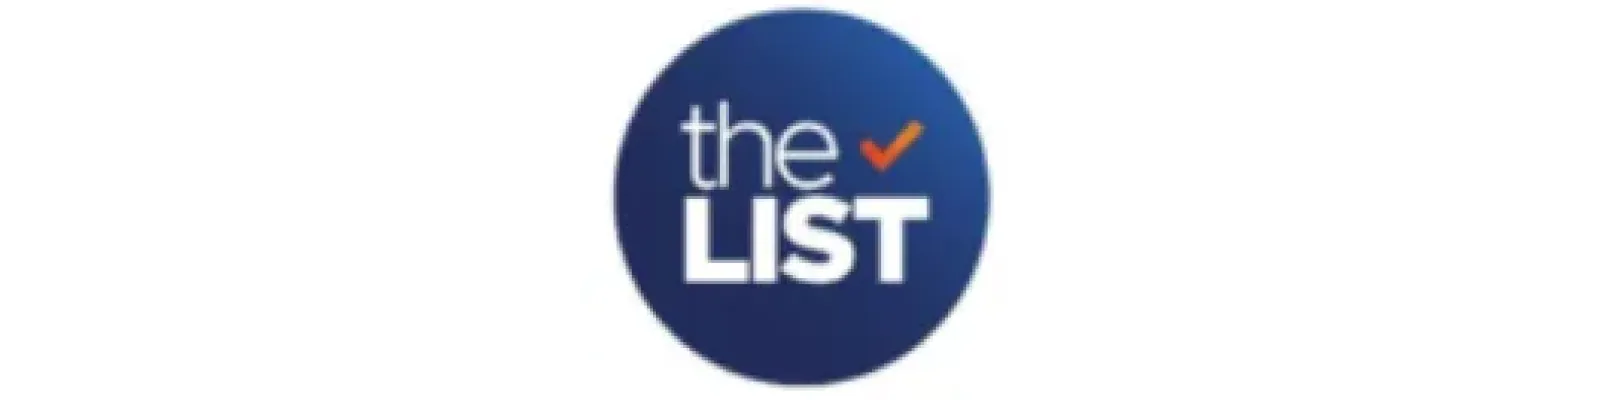 The List_